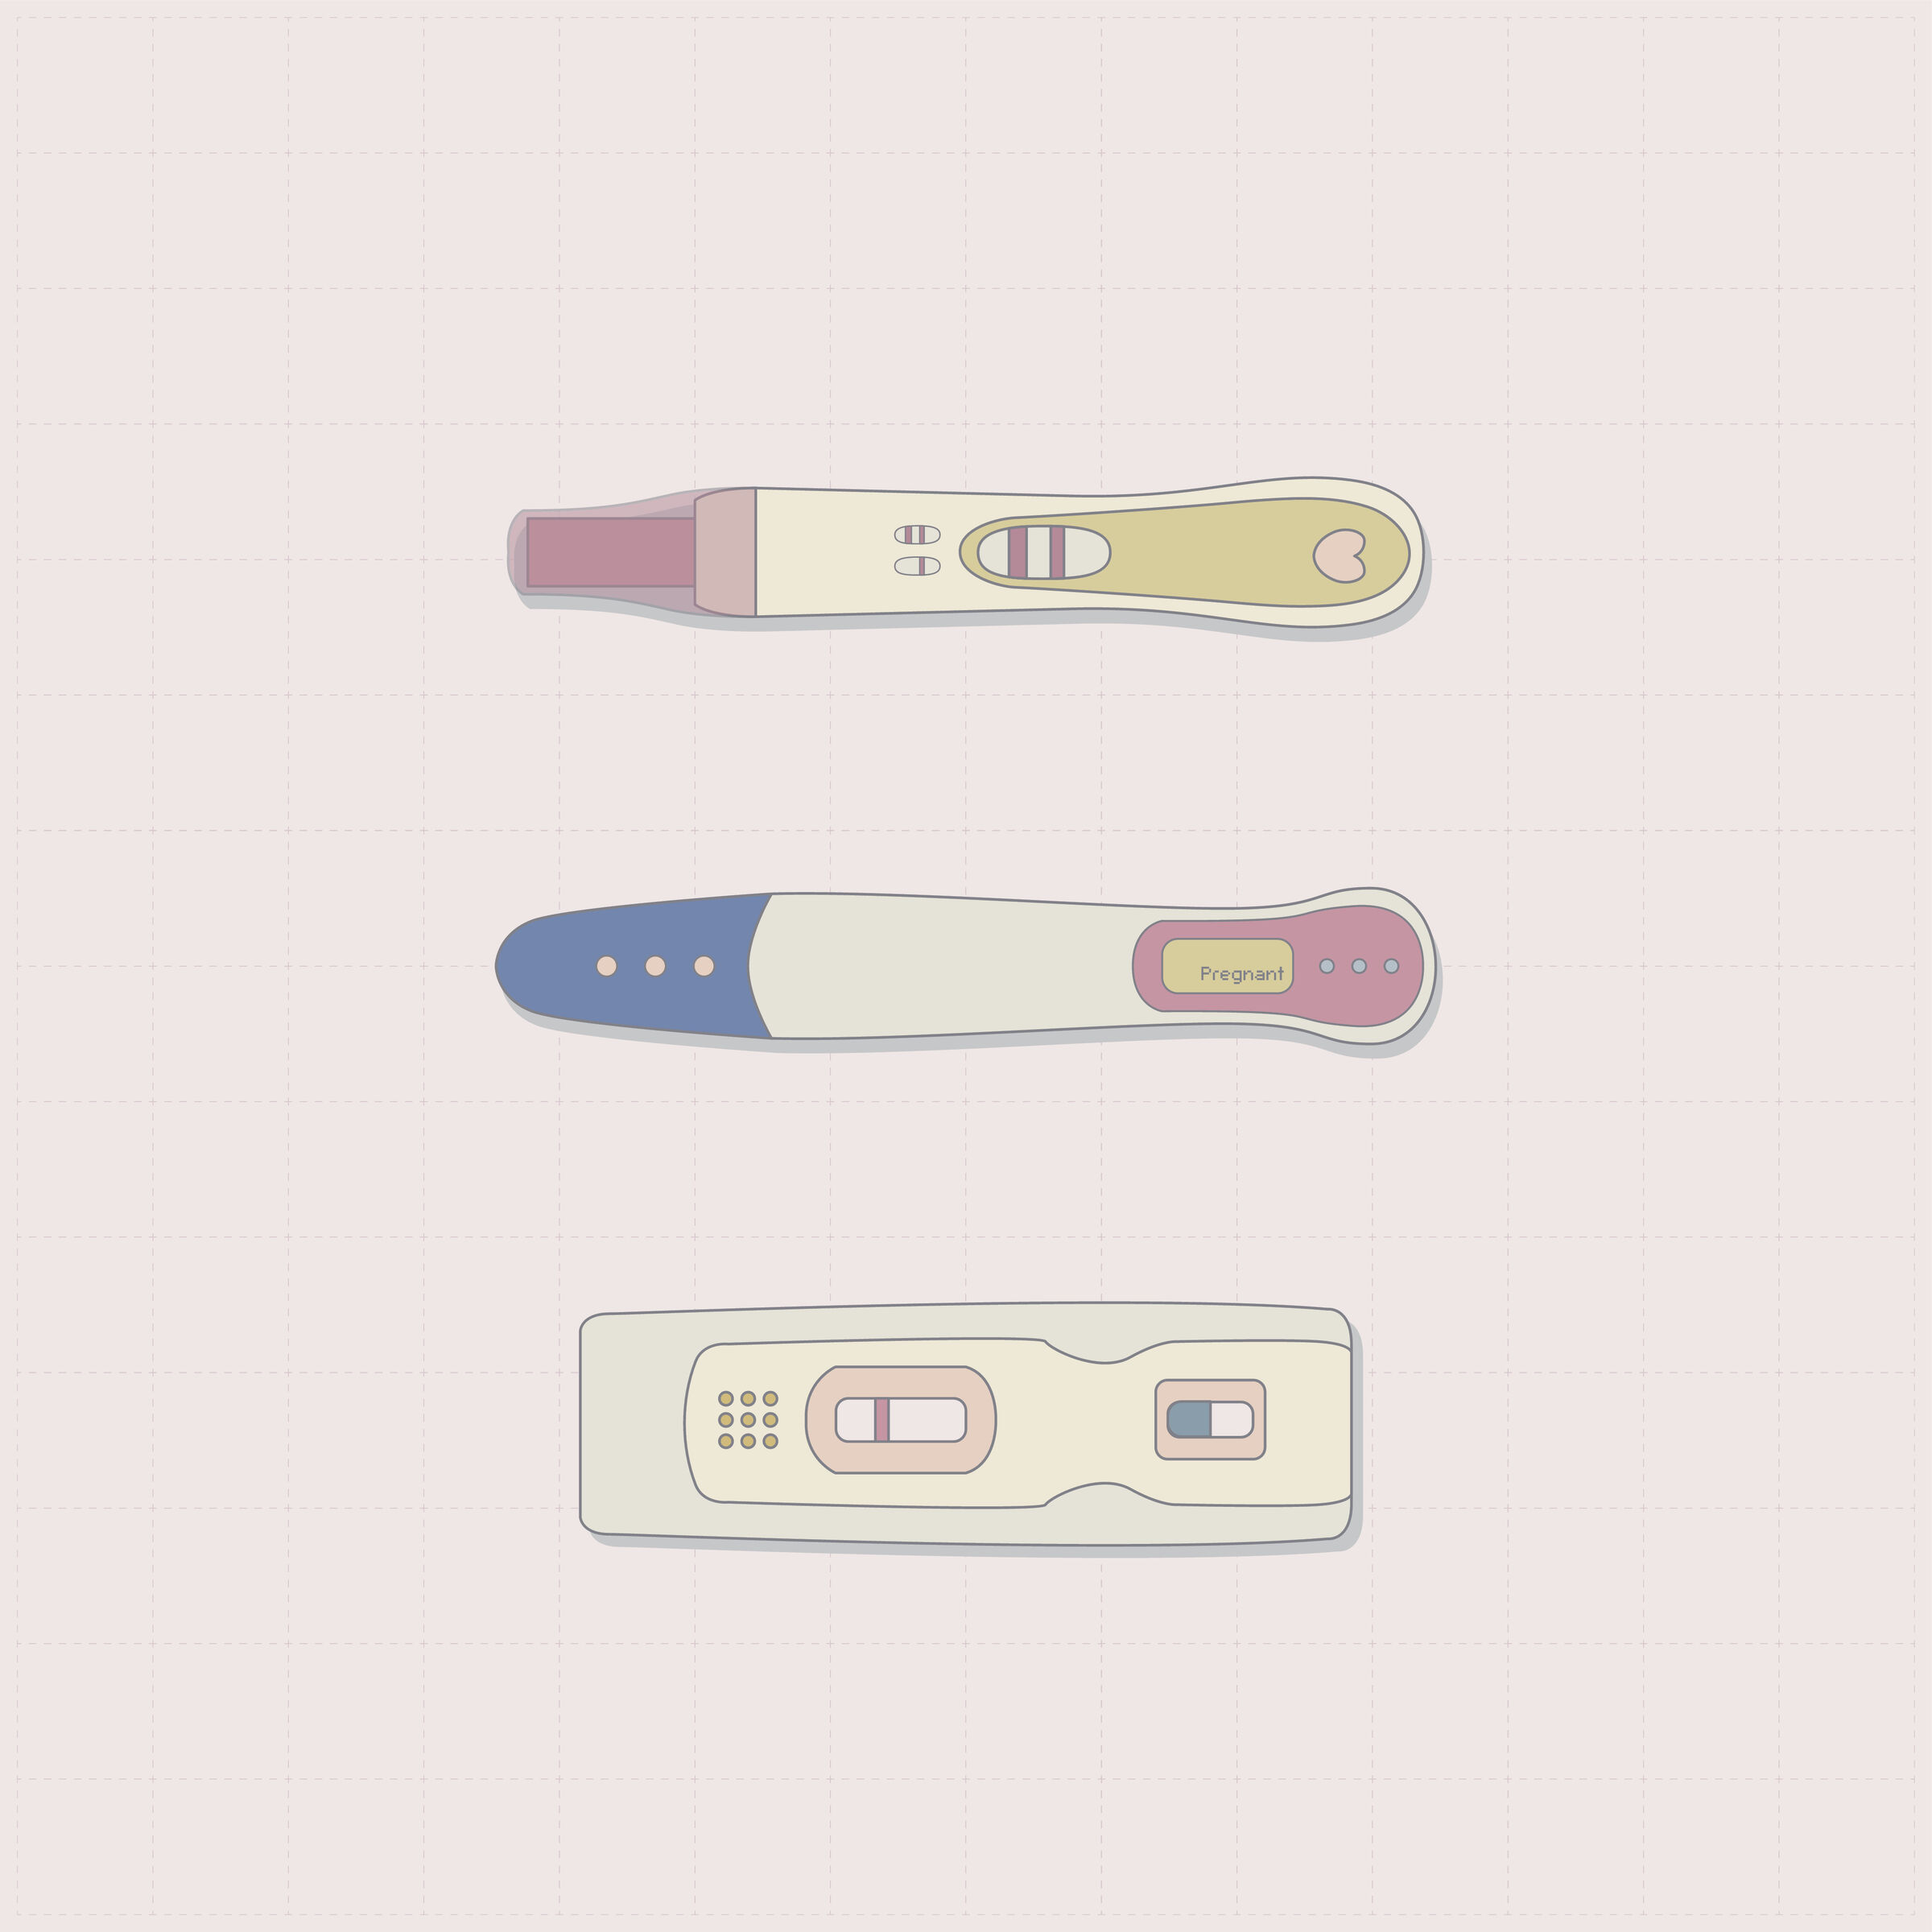 Testes-de-gravidez